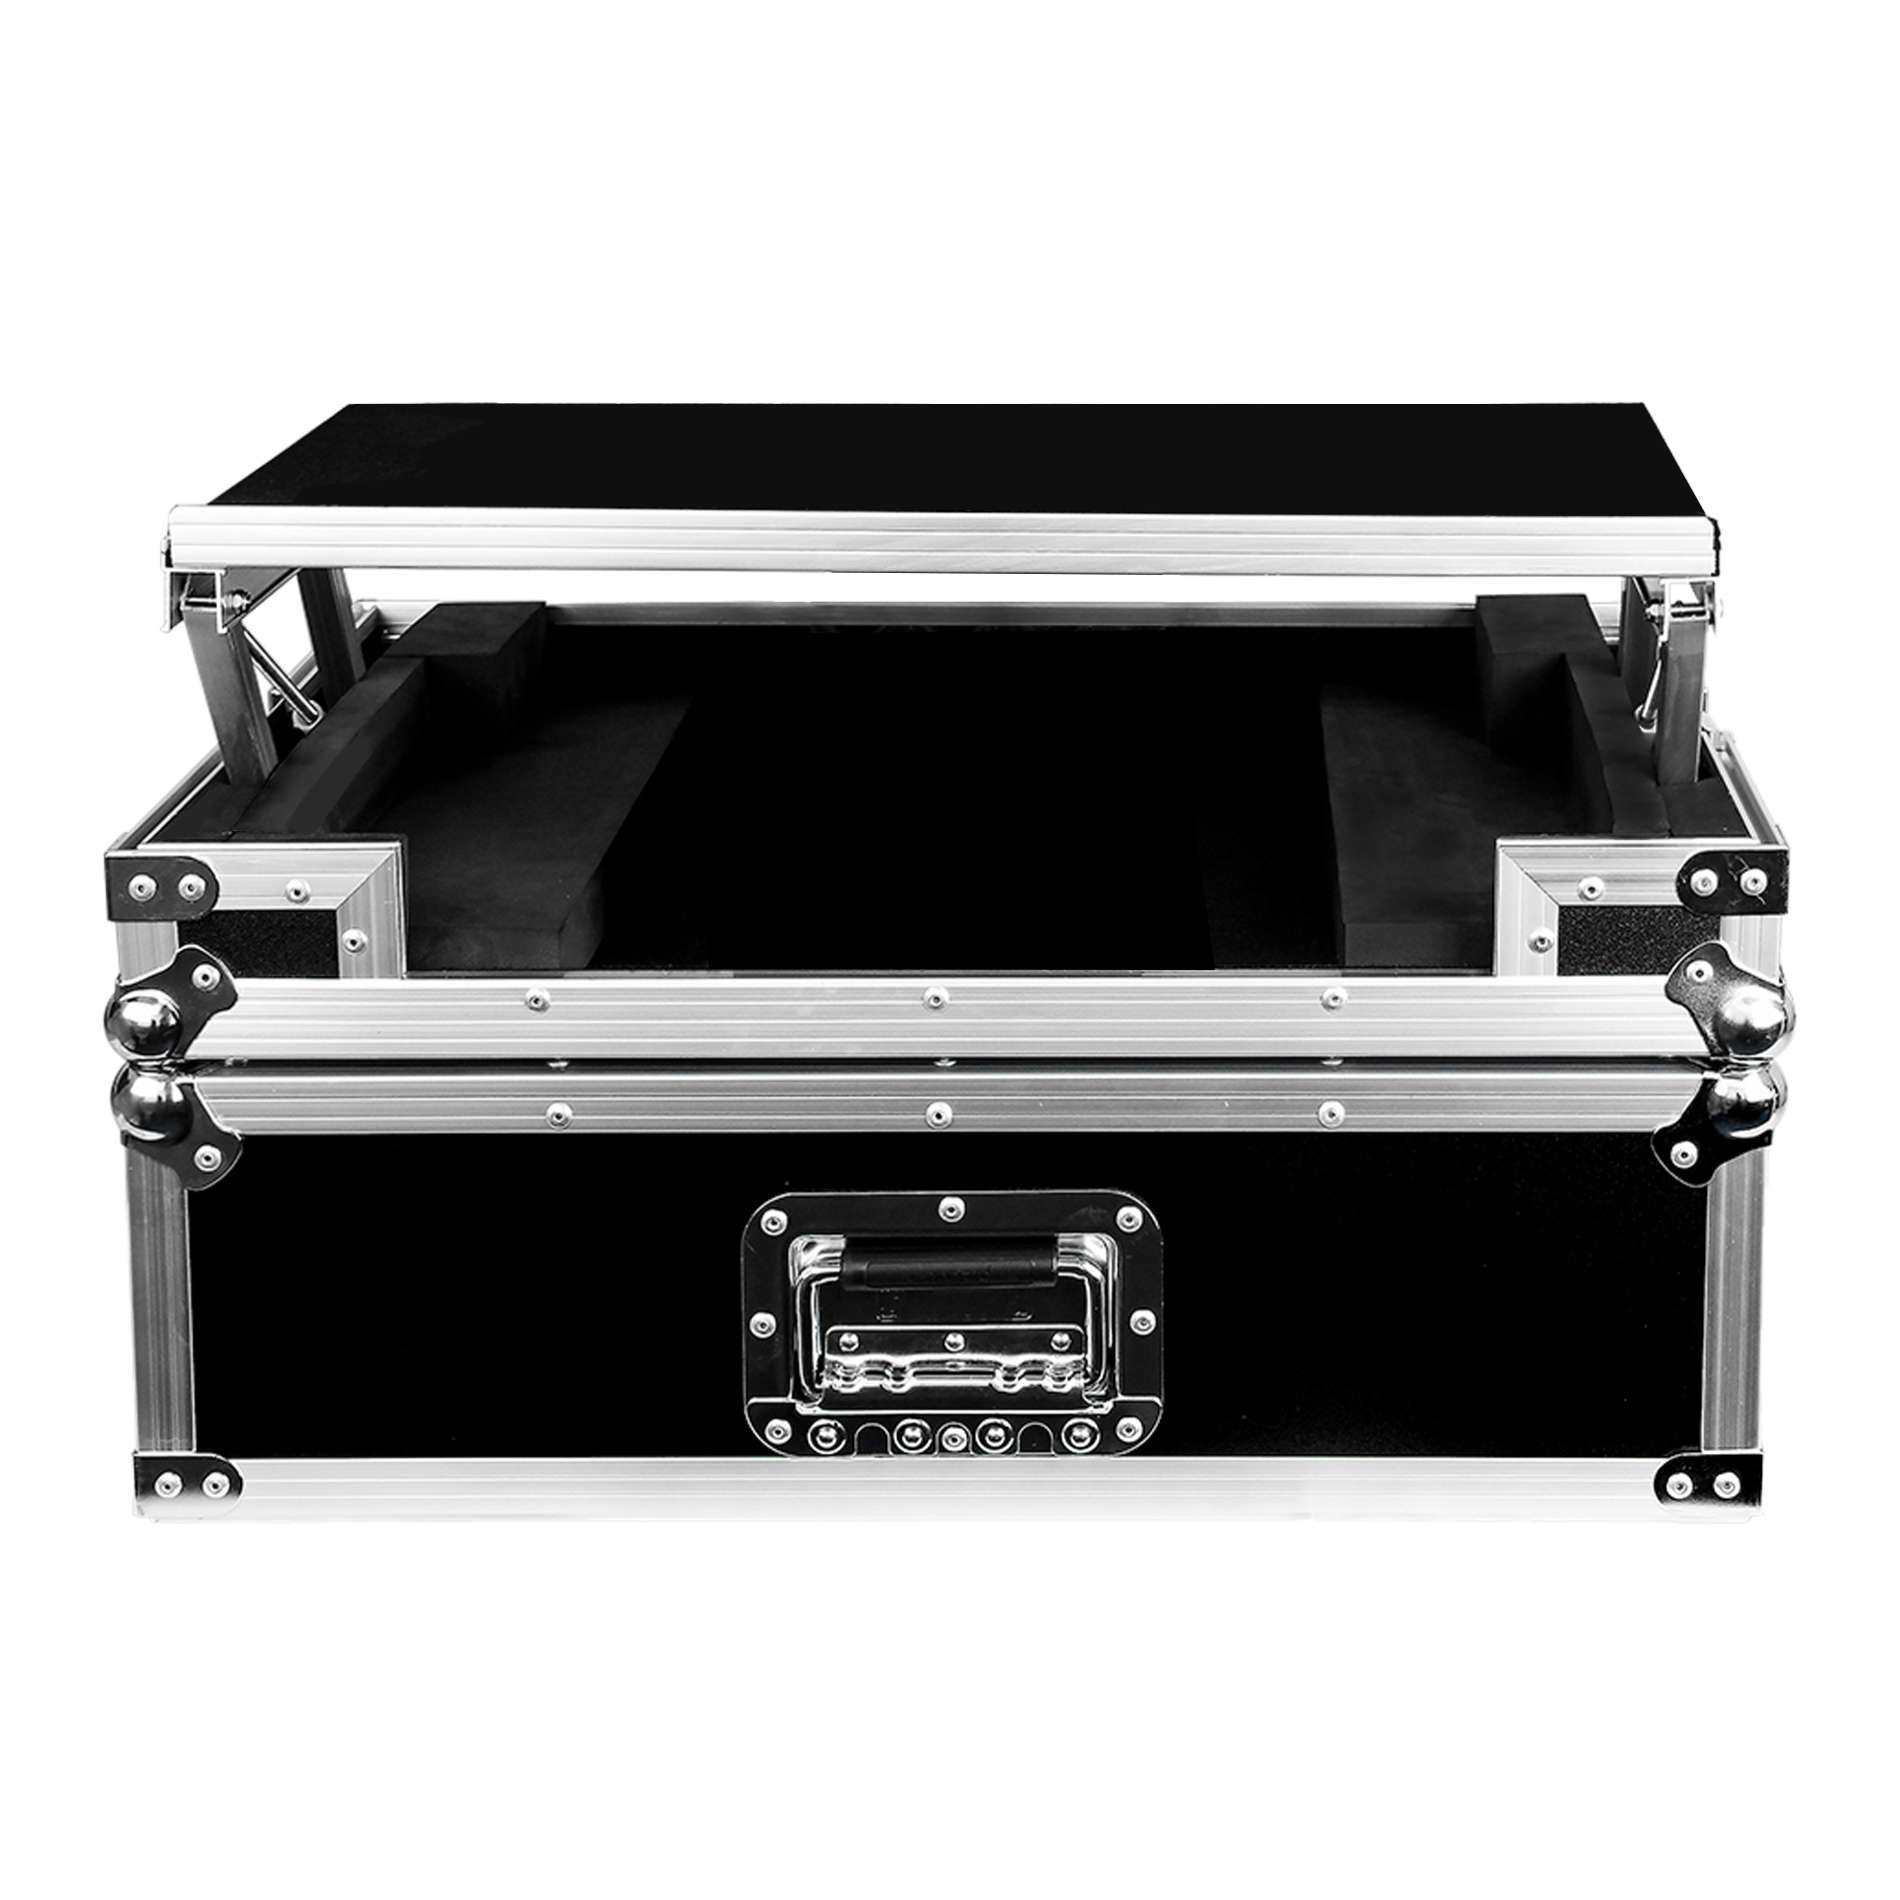 Power Acoustics Flight-case Pour ContrÔleur Ddj 400 - DJ flightcase - Variation 1